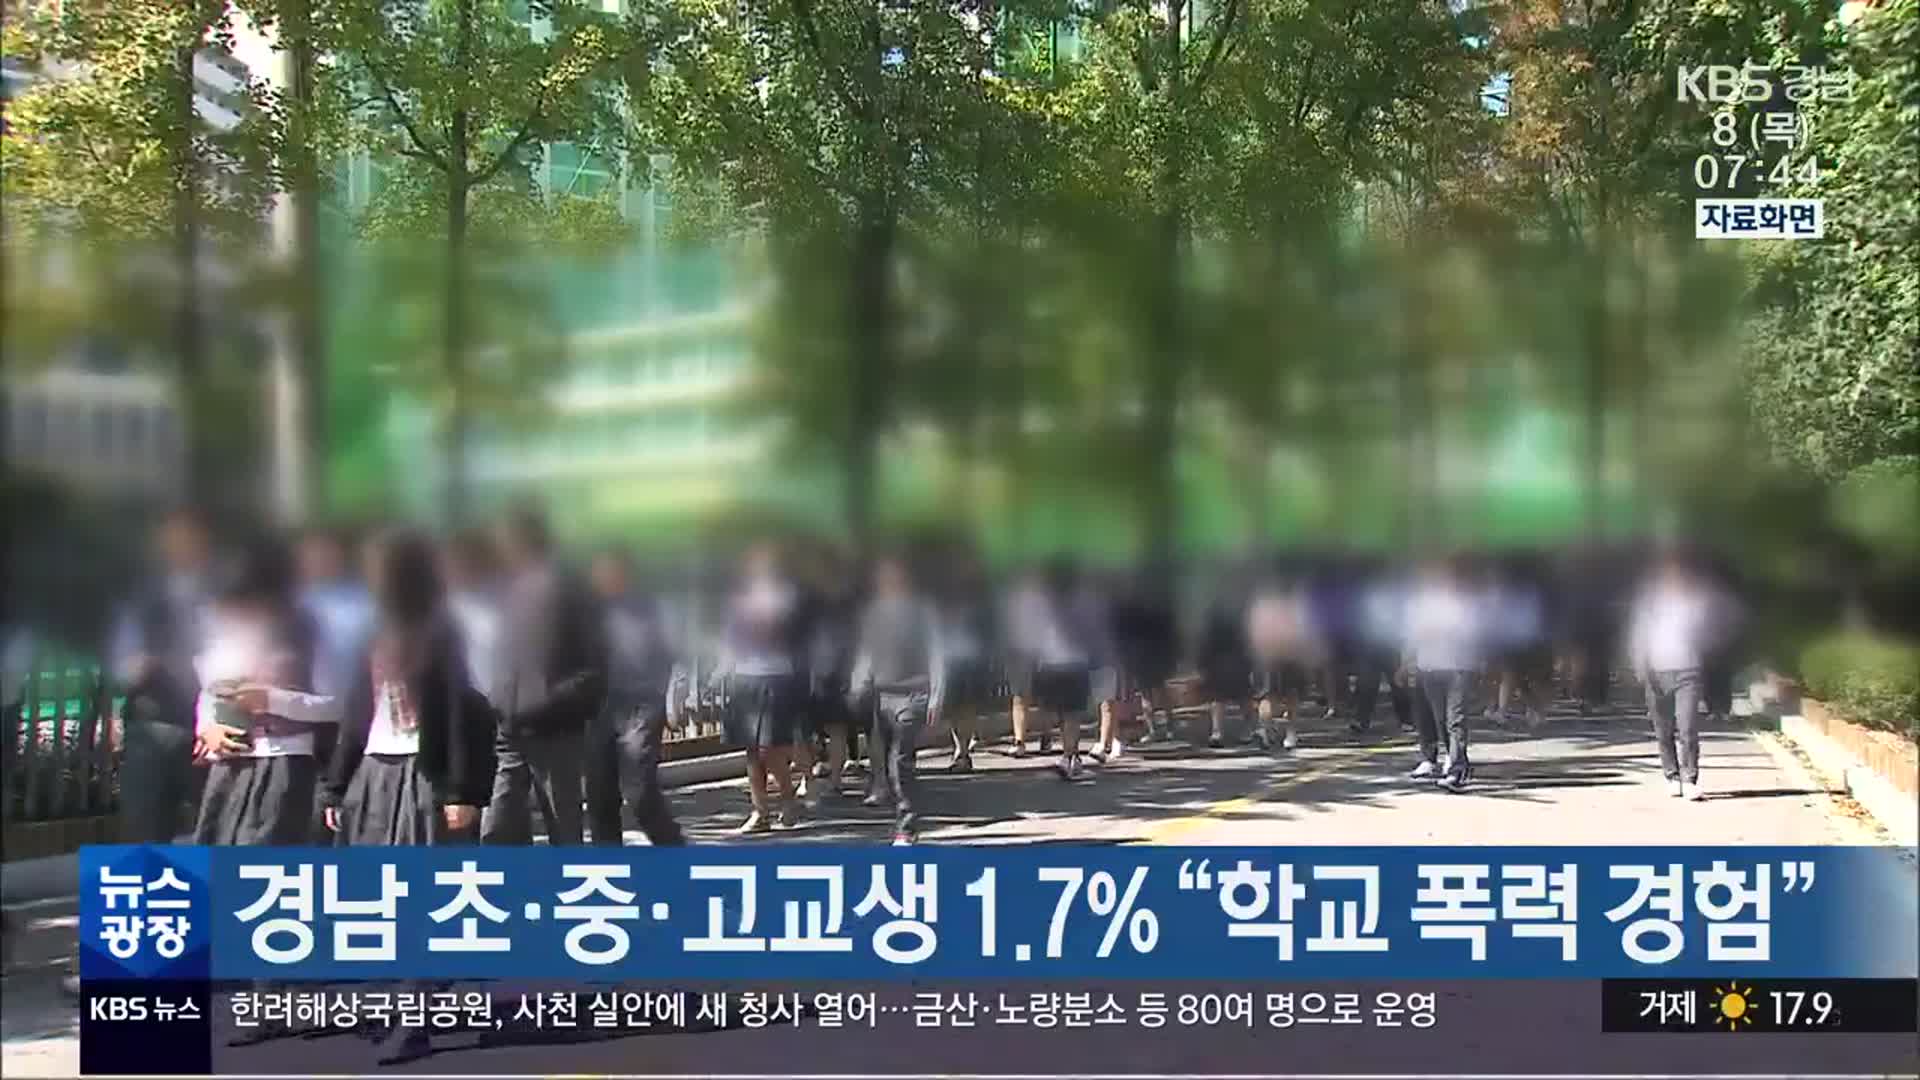 경남 초·중·고교생 1.7% “학교 폭력 경험”